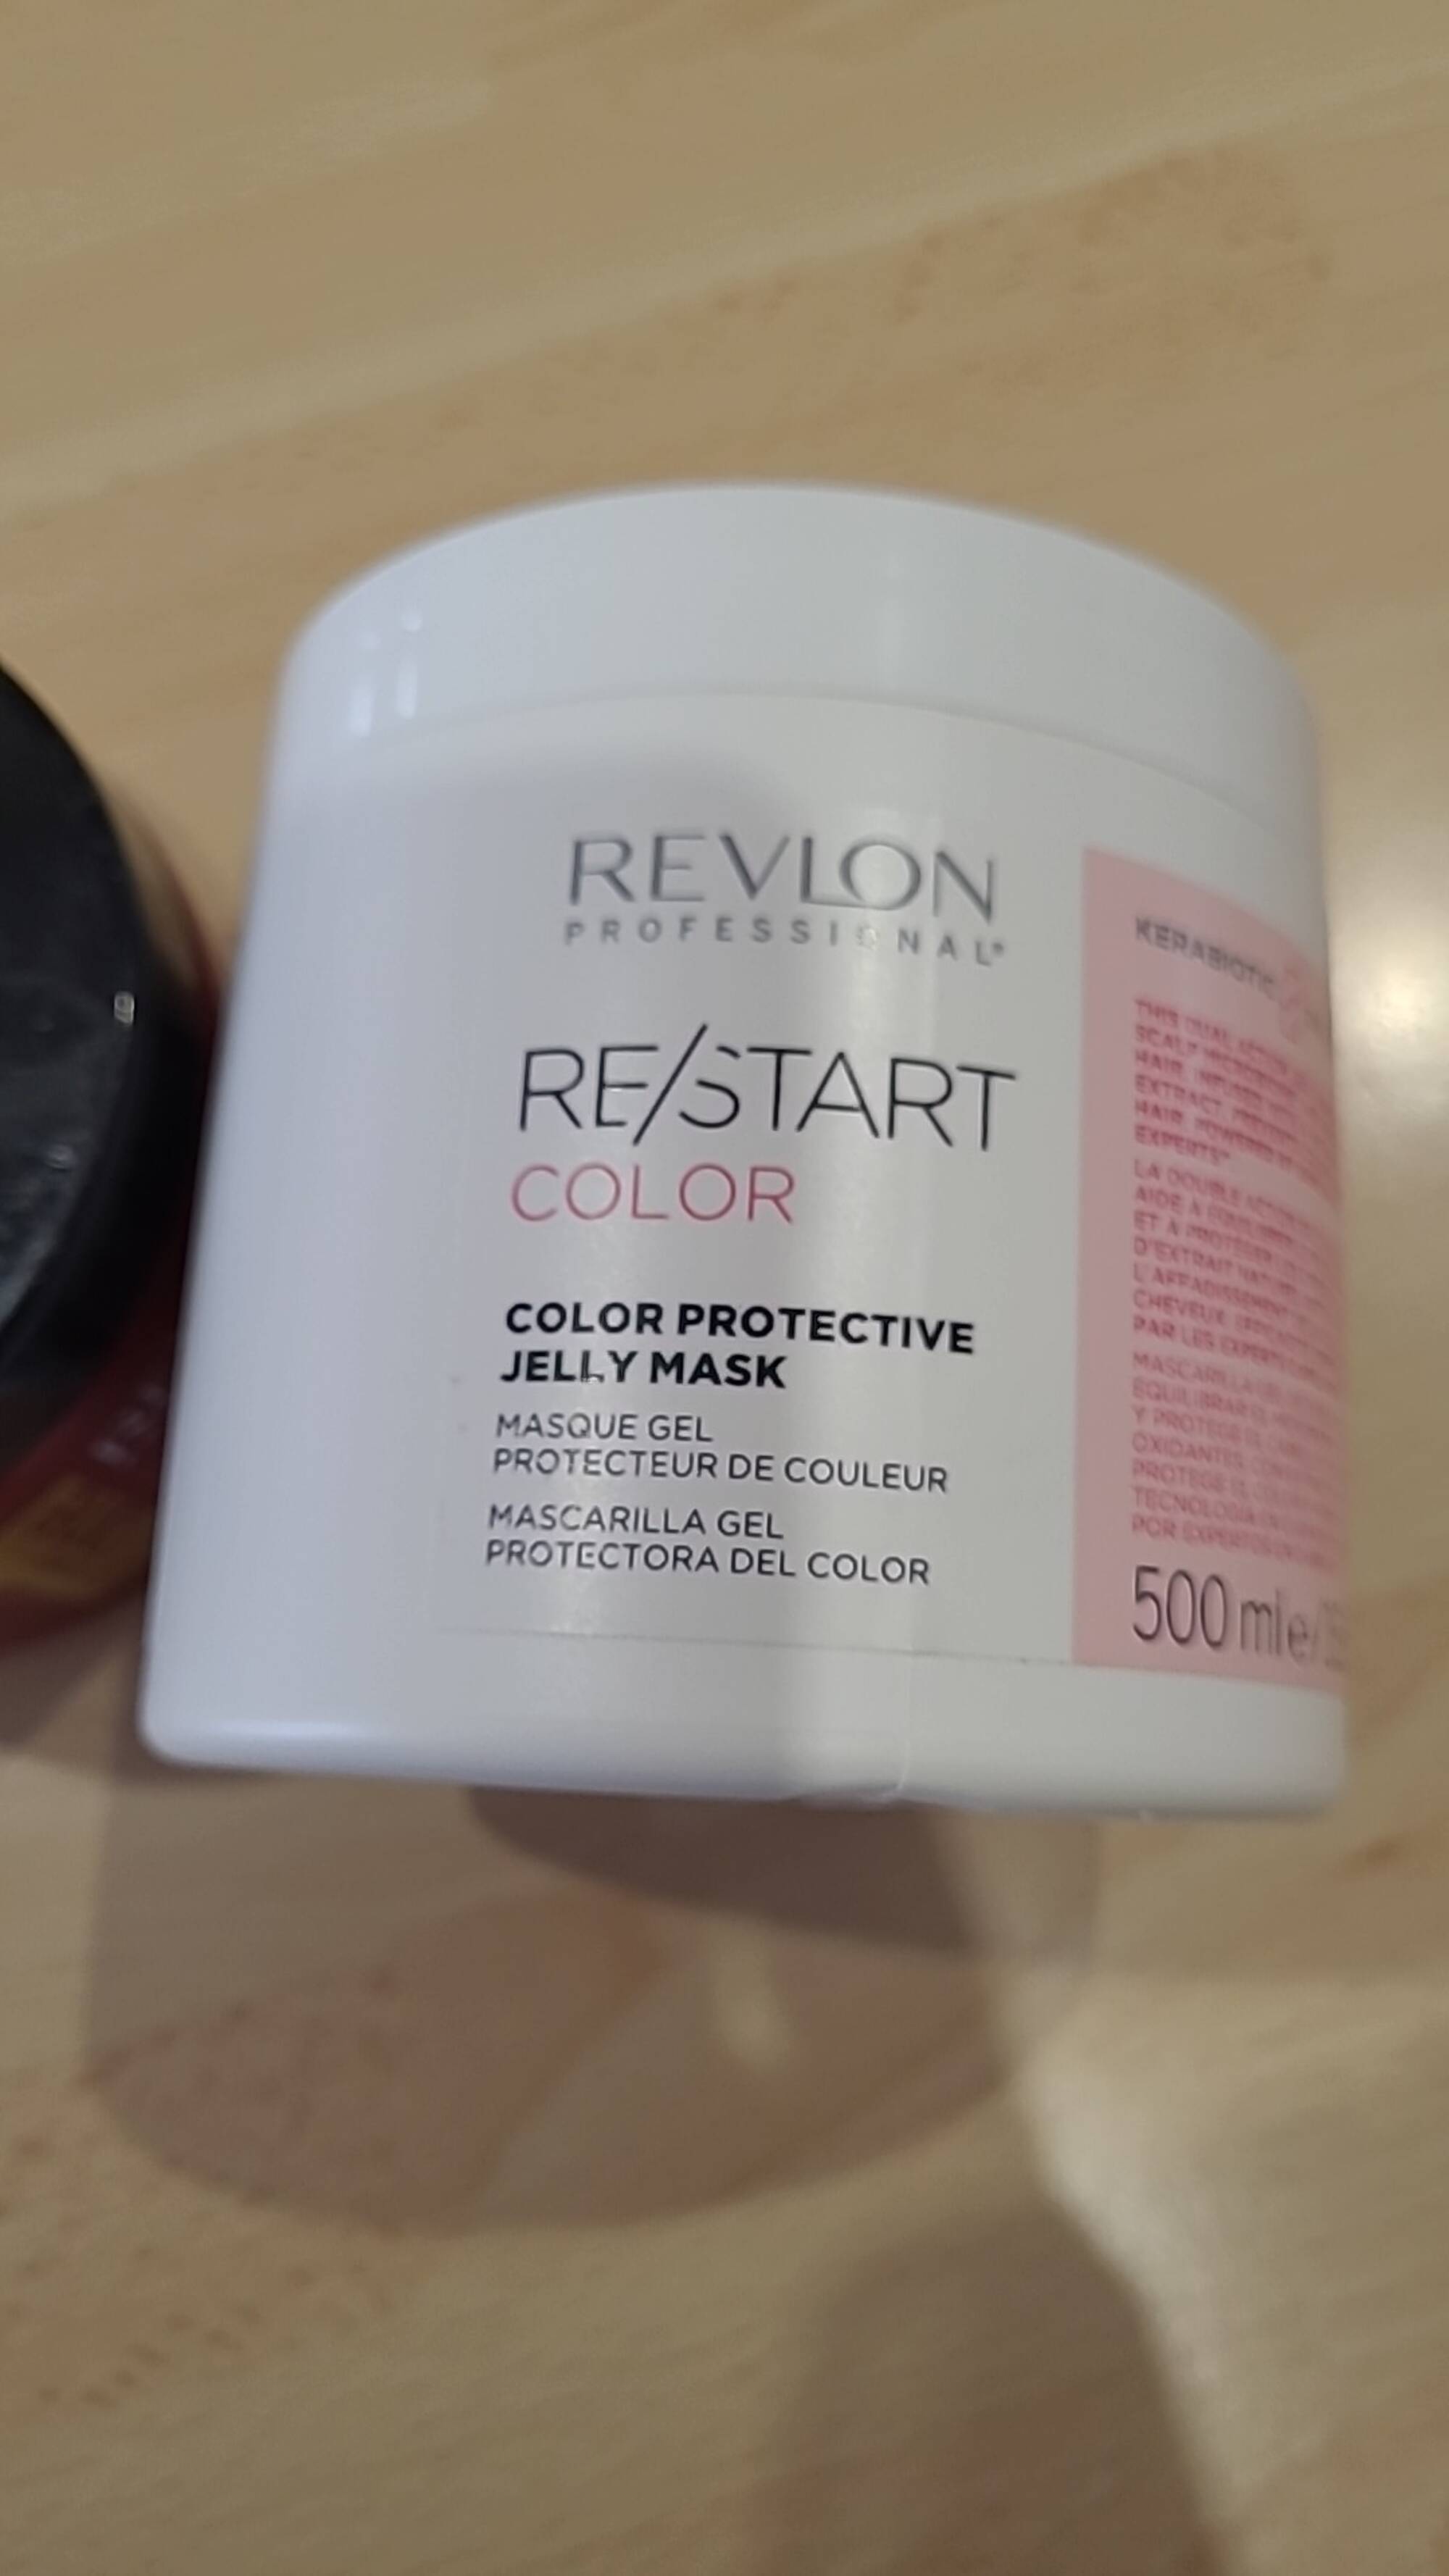 REVLON - Restart color - Masque gel protecteur de couleur